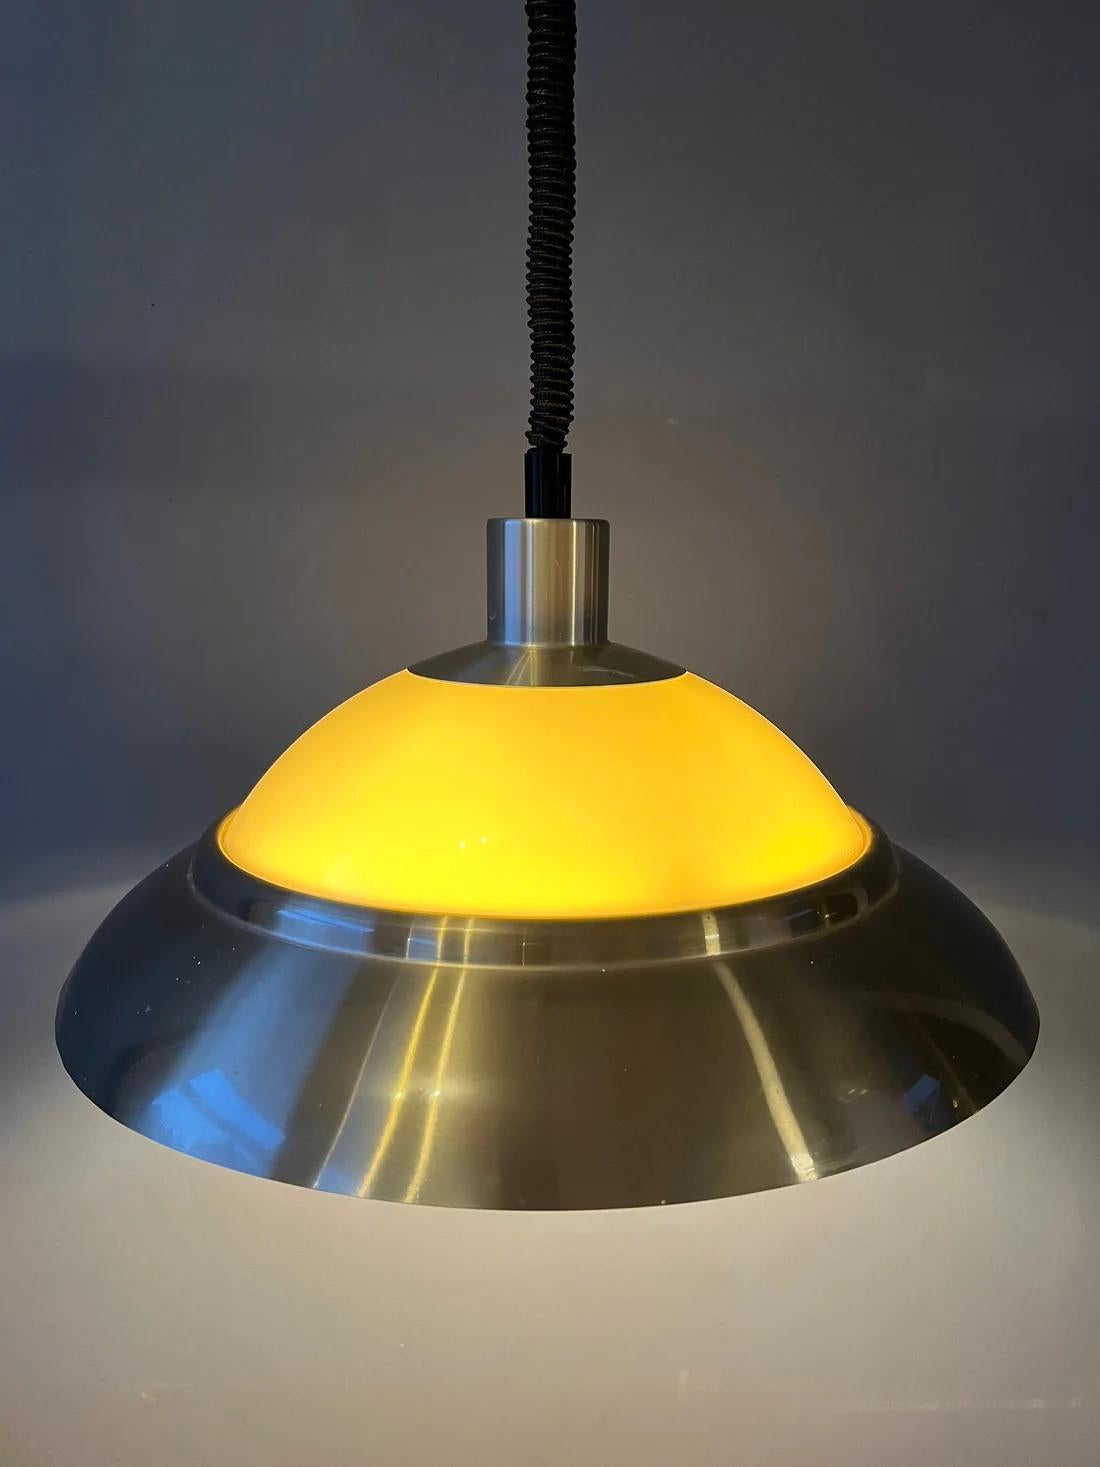 Lampe suspendue vintage Dijkstra datant de l'ère spatiale. La lampe se compose d'une partie en aluminium et d'une partie en plexiglas, ce qui crée une belle diffusion de la lumière. La lampe nécessite une ampoule E27/26 (standard).

Dimensions :
ø